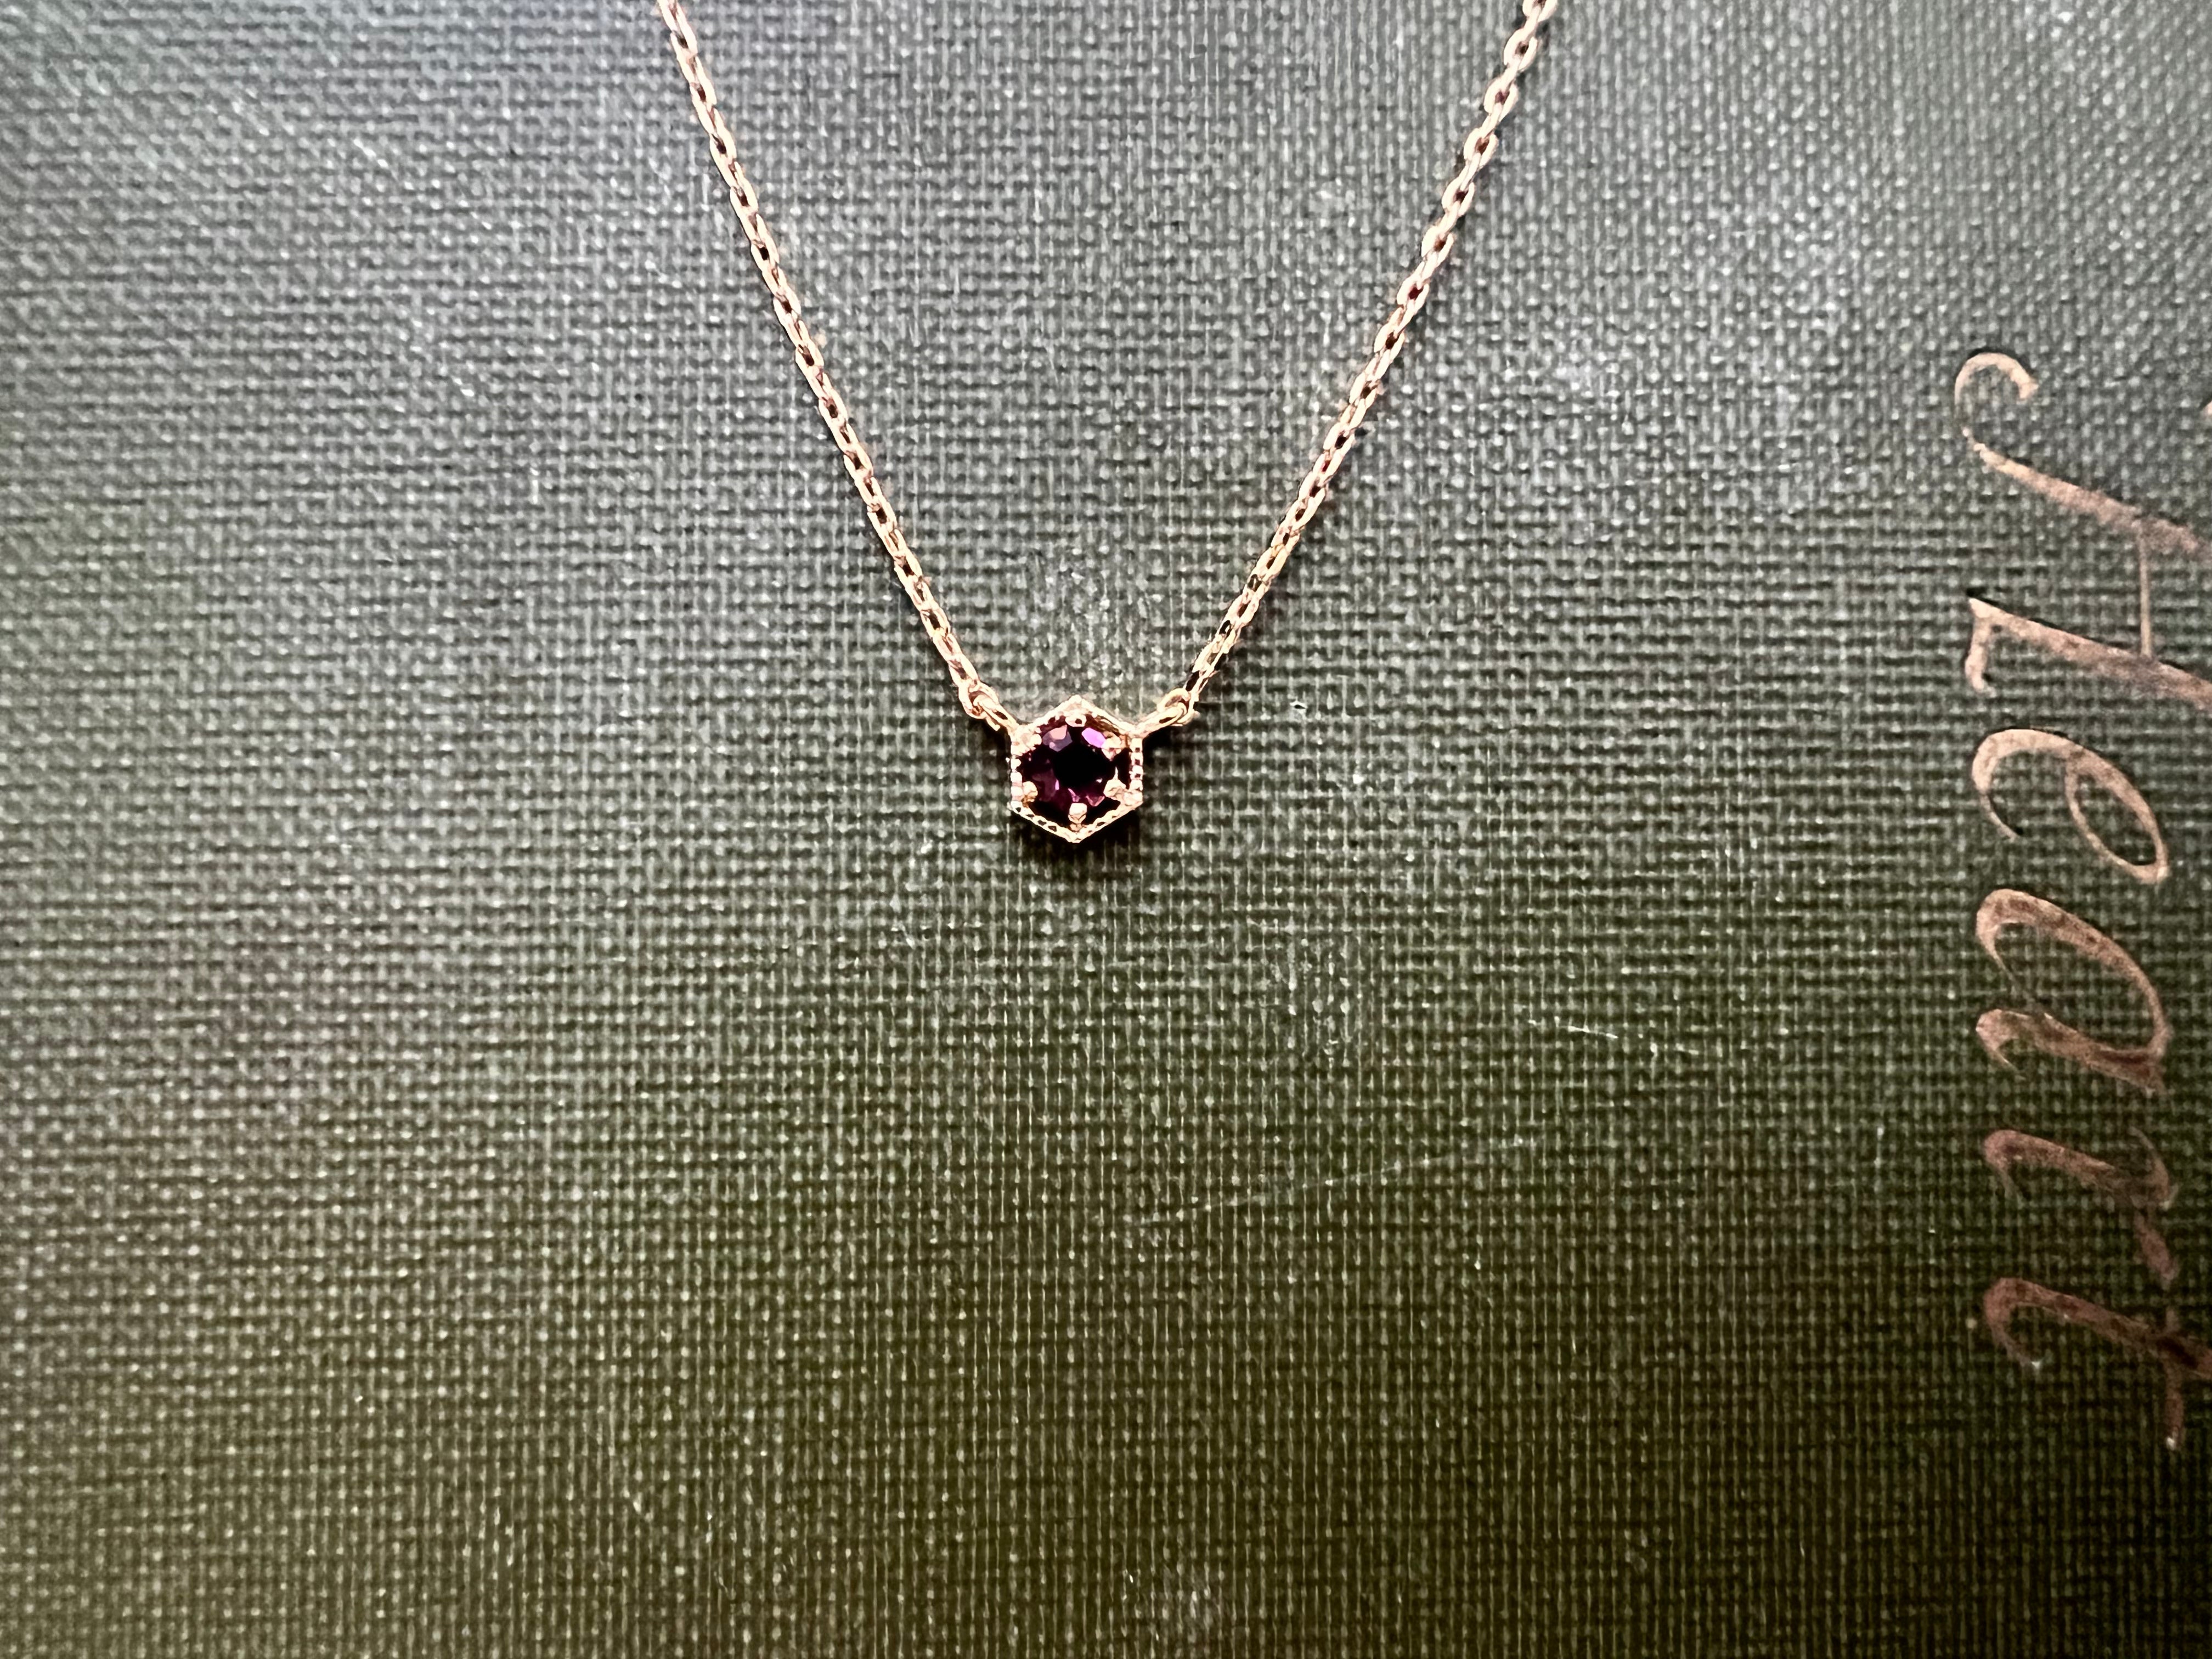 February Stone Necklace